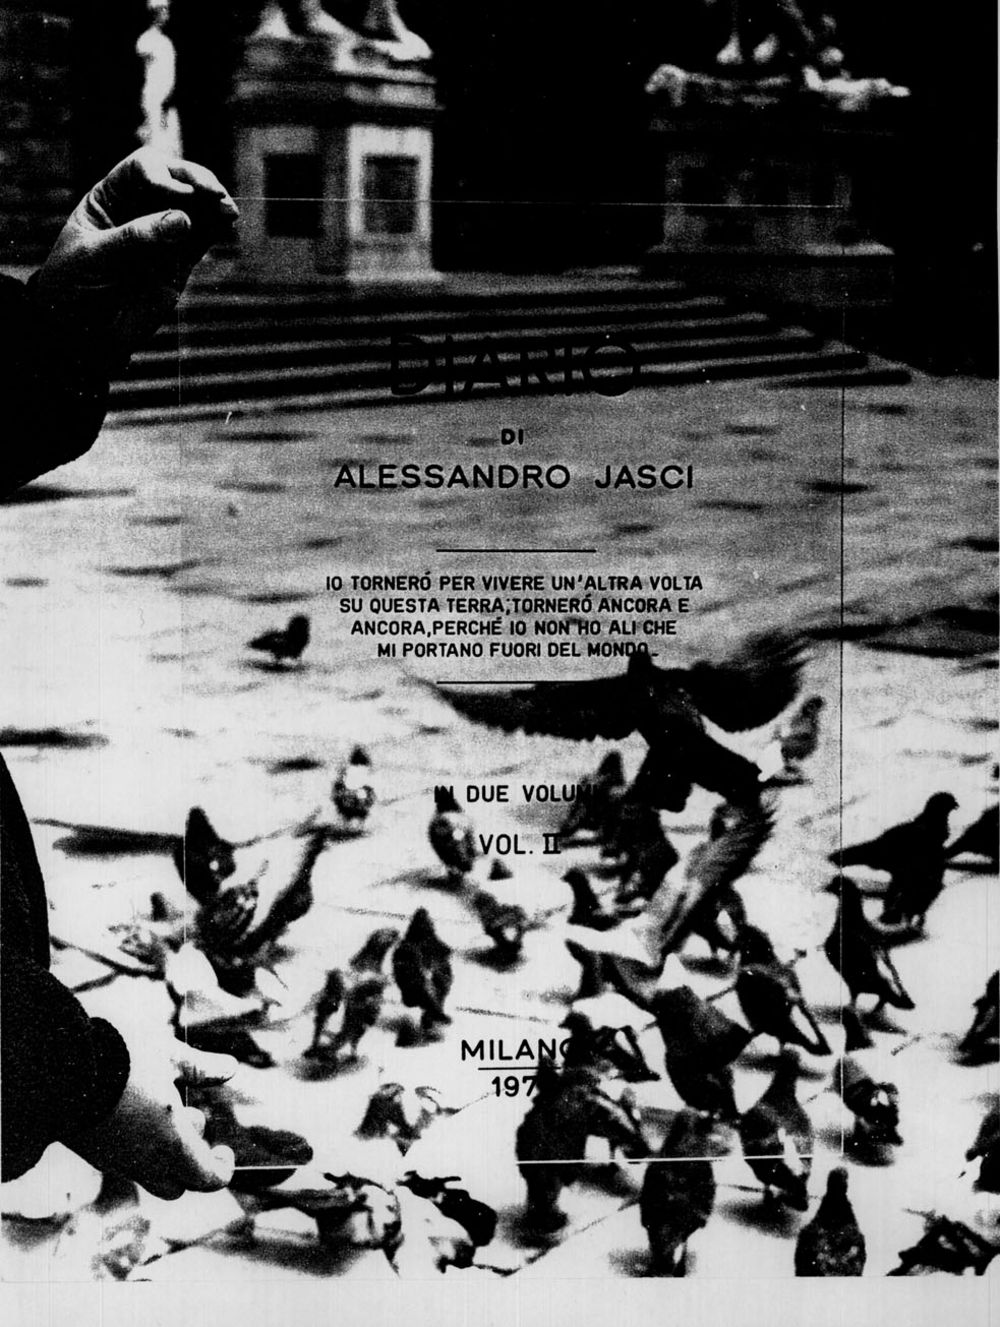 Trasparent vision - Diario II - Alessandro Jasci